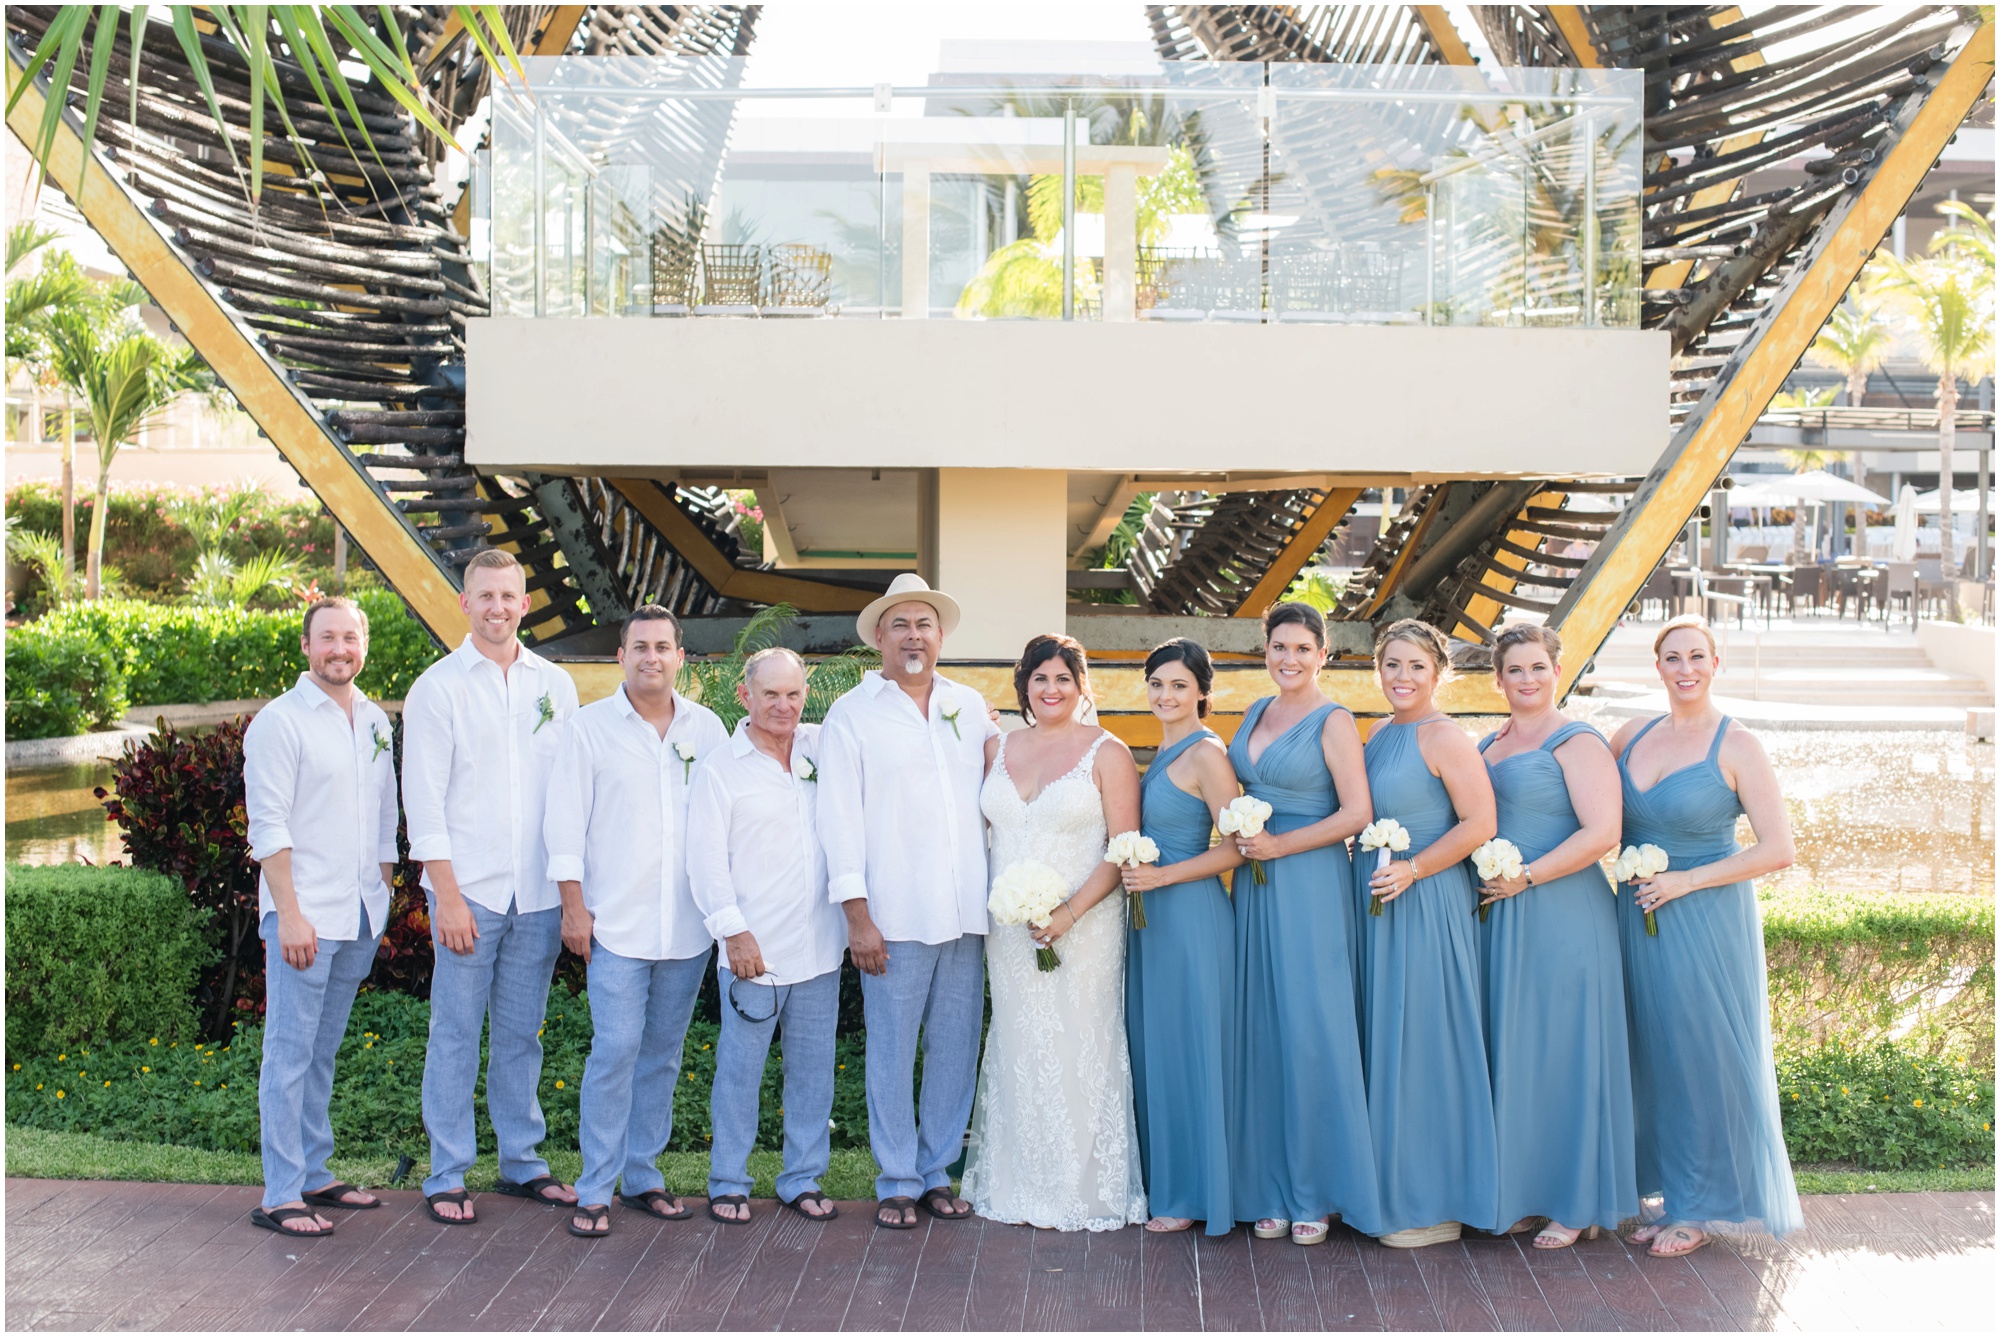 Wedding Party Photos at Royalton Riviera Cancun